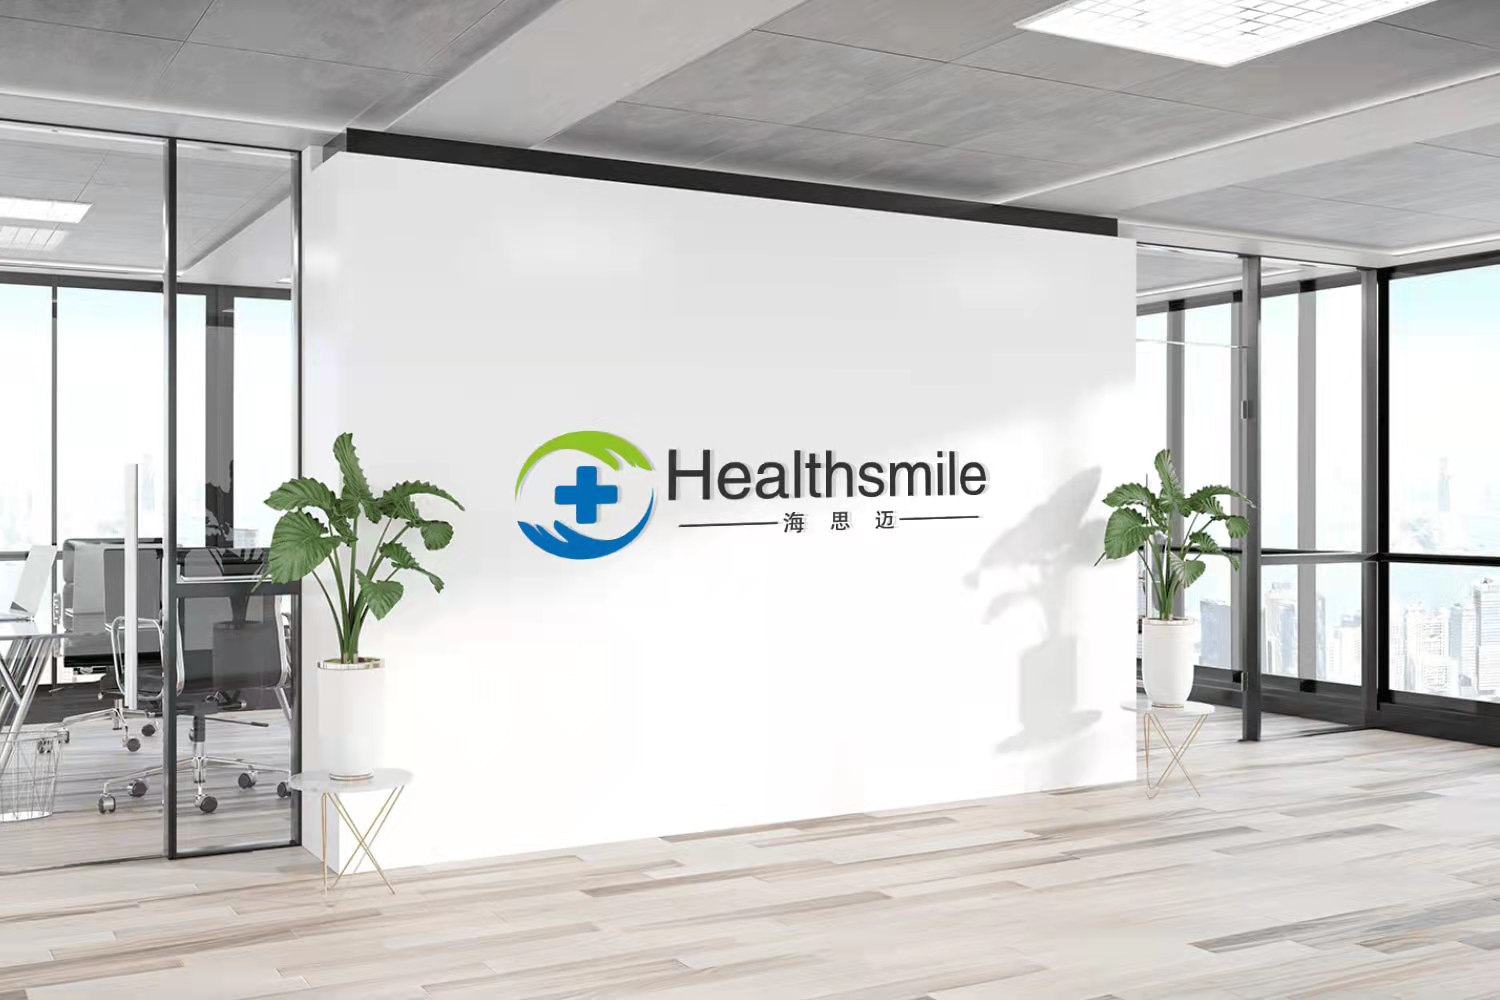 Healthsmile Medical-ทางเลือกที่ดีที่สุดของสำลีม้วน สำลีดูดซับ สำลีทางการแพทย์ และสำลีเครื่องสำอาง